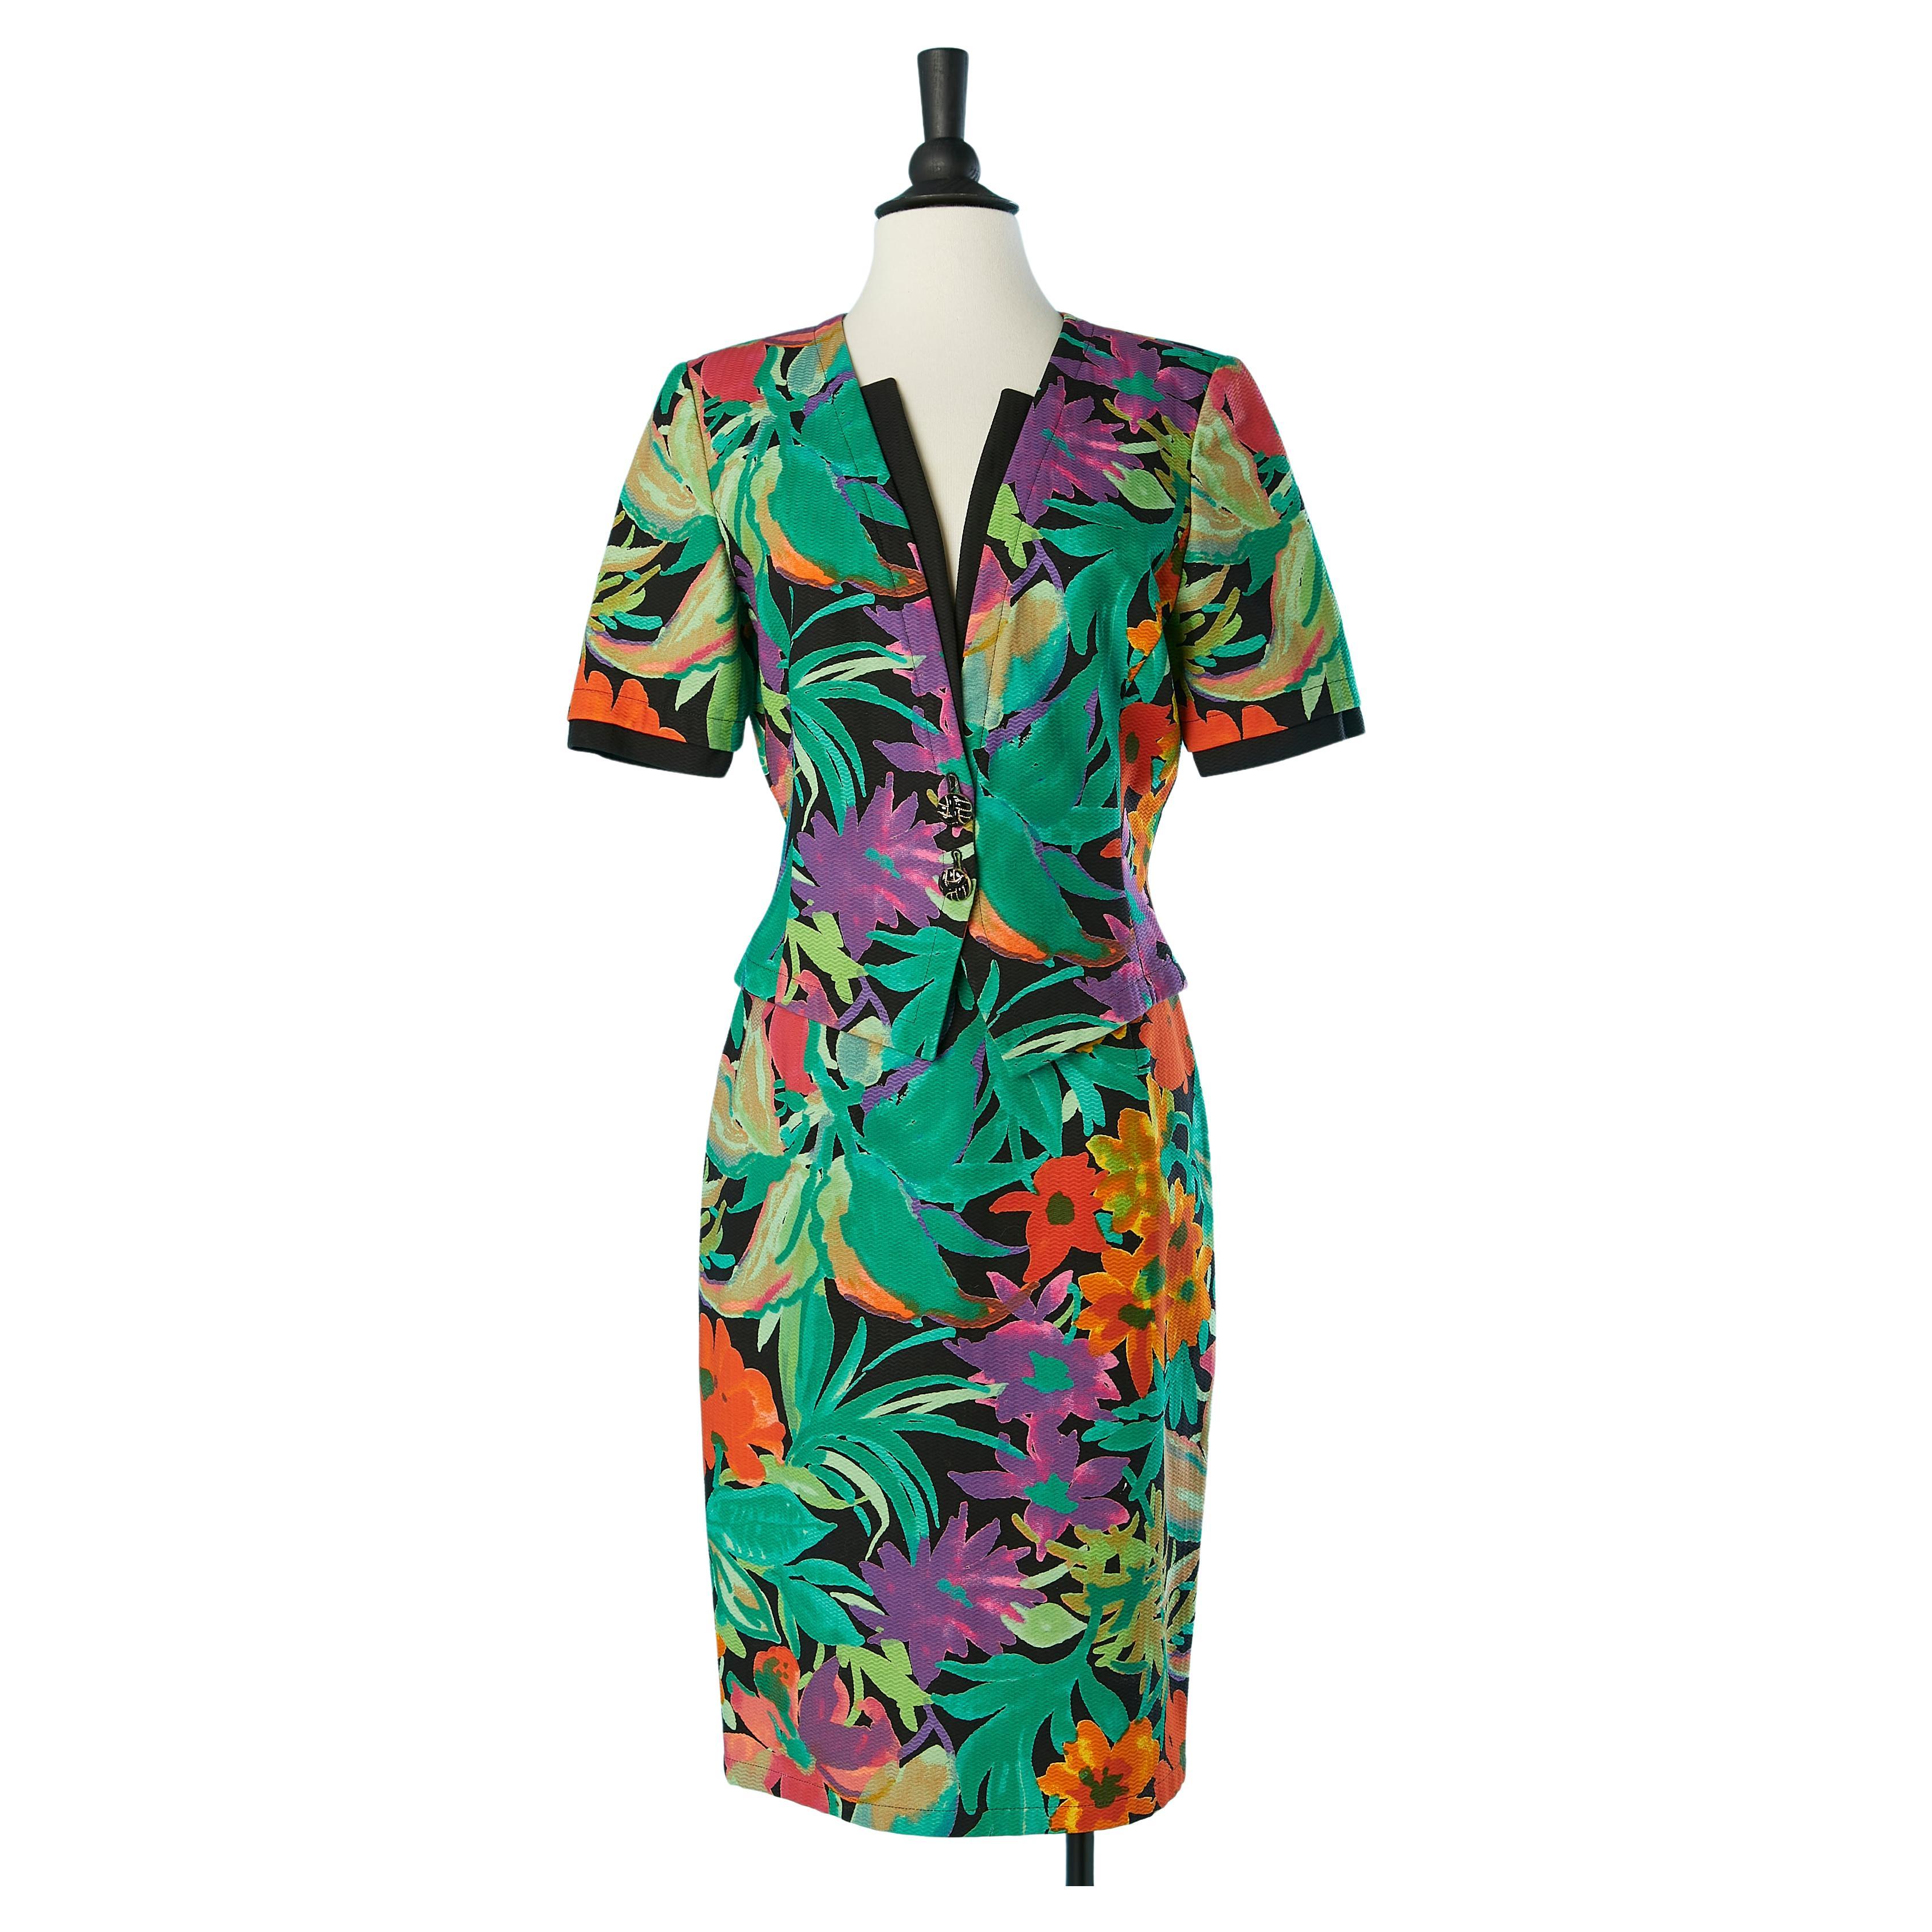 Multicolor jungle print cotton skirt-suit Ungaro Solo Donna 